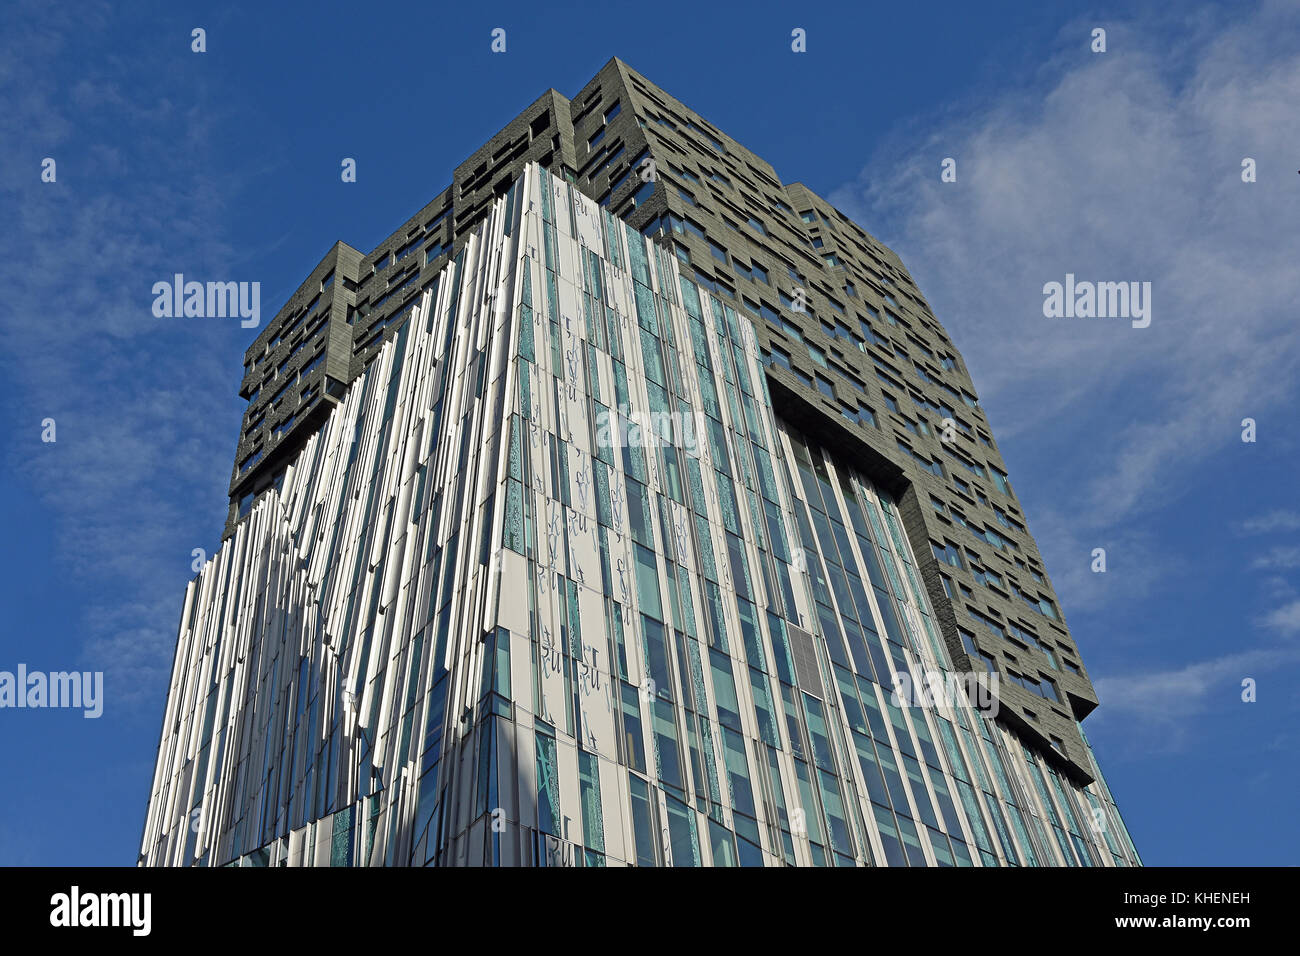 Der Fels Wolkenkratzer (Architekt: Erick van egeraat Associated Architects), Amsterdam, Nordholland, Niederlande, Niederlande Stockfoto